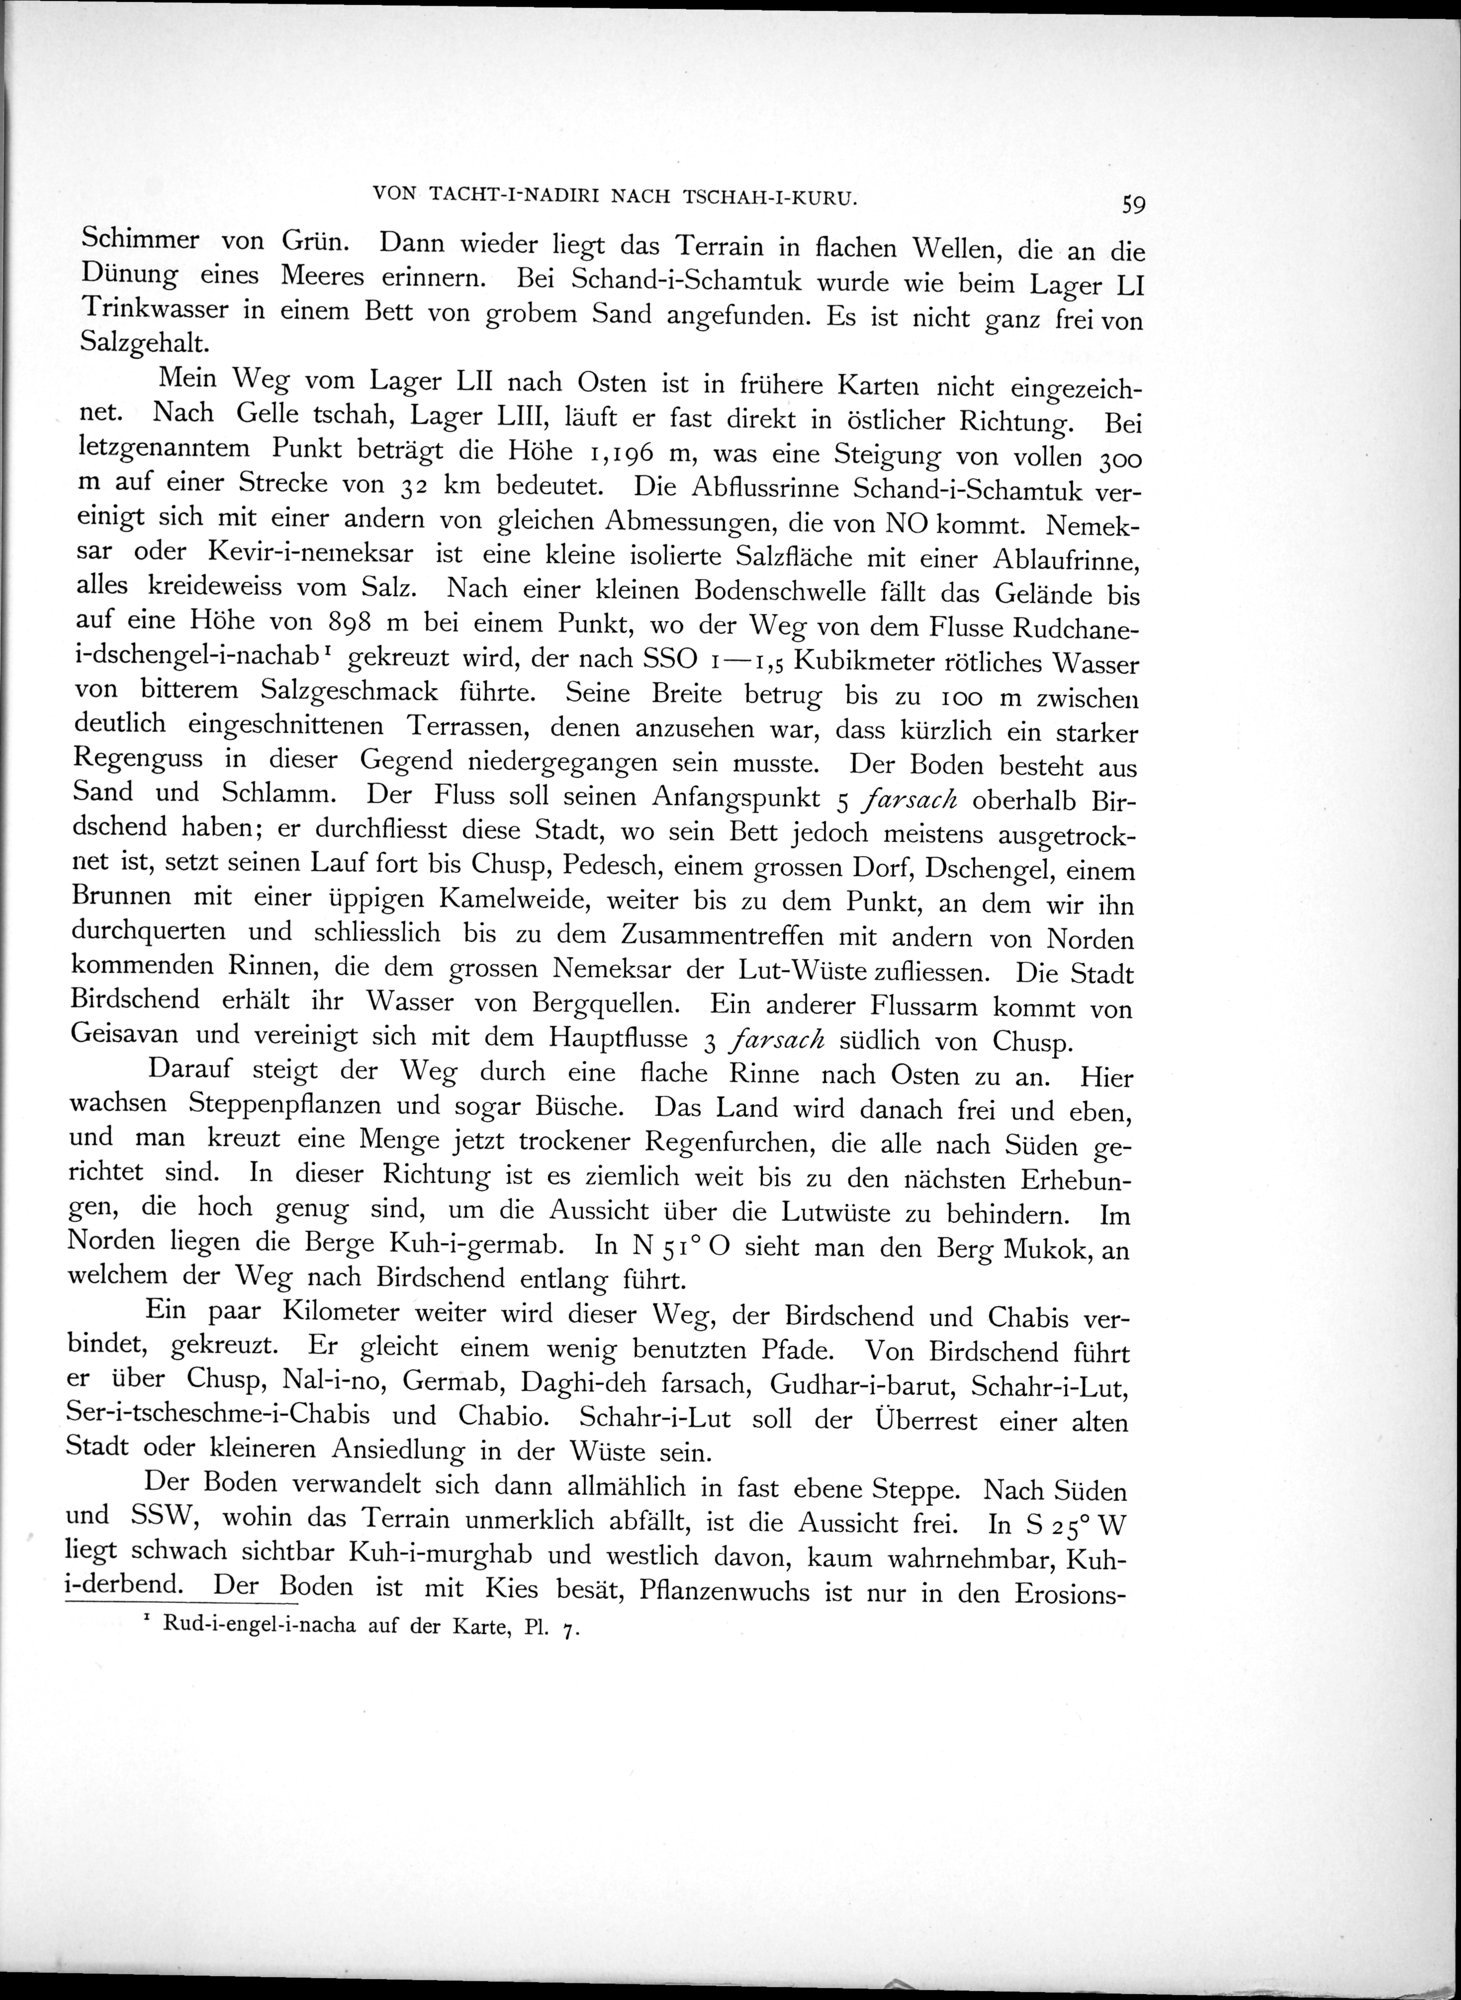 Eine Routenaufnahme durch Ostpersien : vol.1 / Page 199 (Grayscale High Resolution Image)